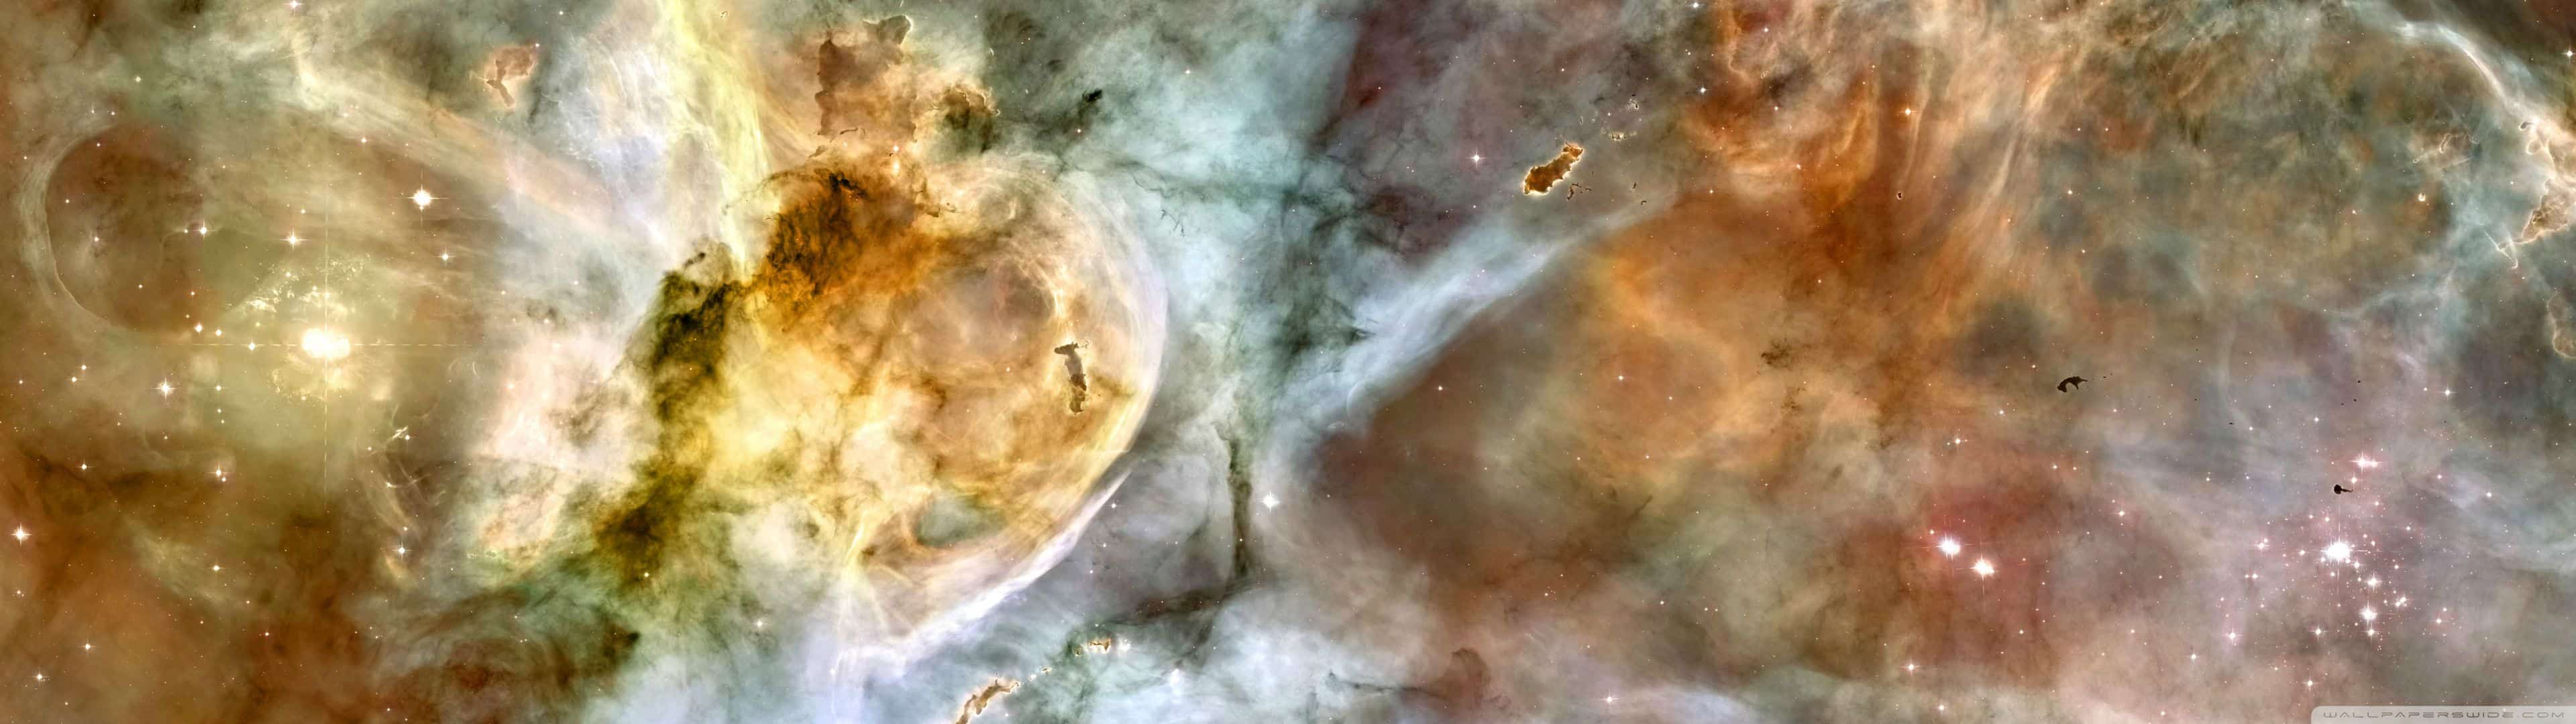 Carina Nebula Dual Monitor Wallpaper - Carina Nebula - HD Wallpaper 